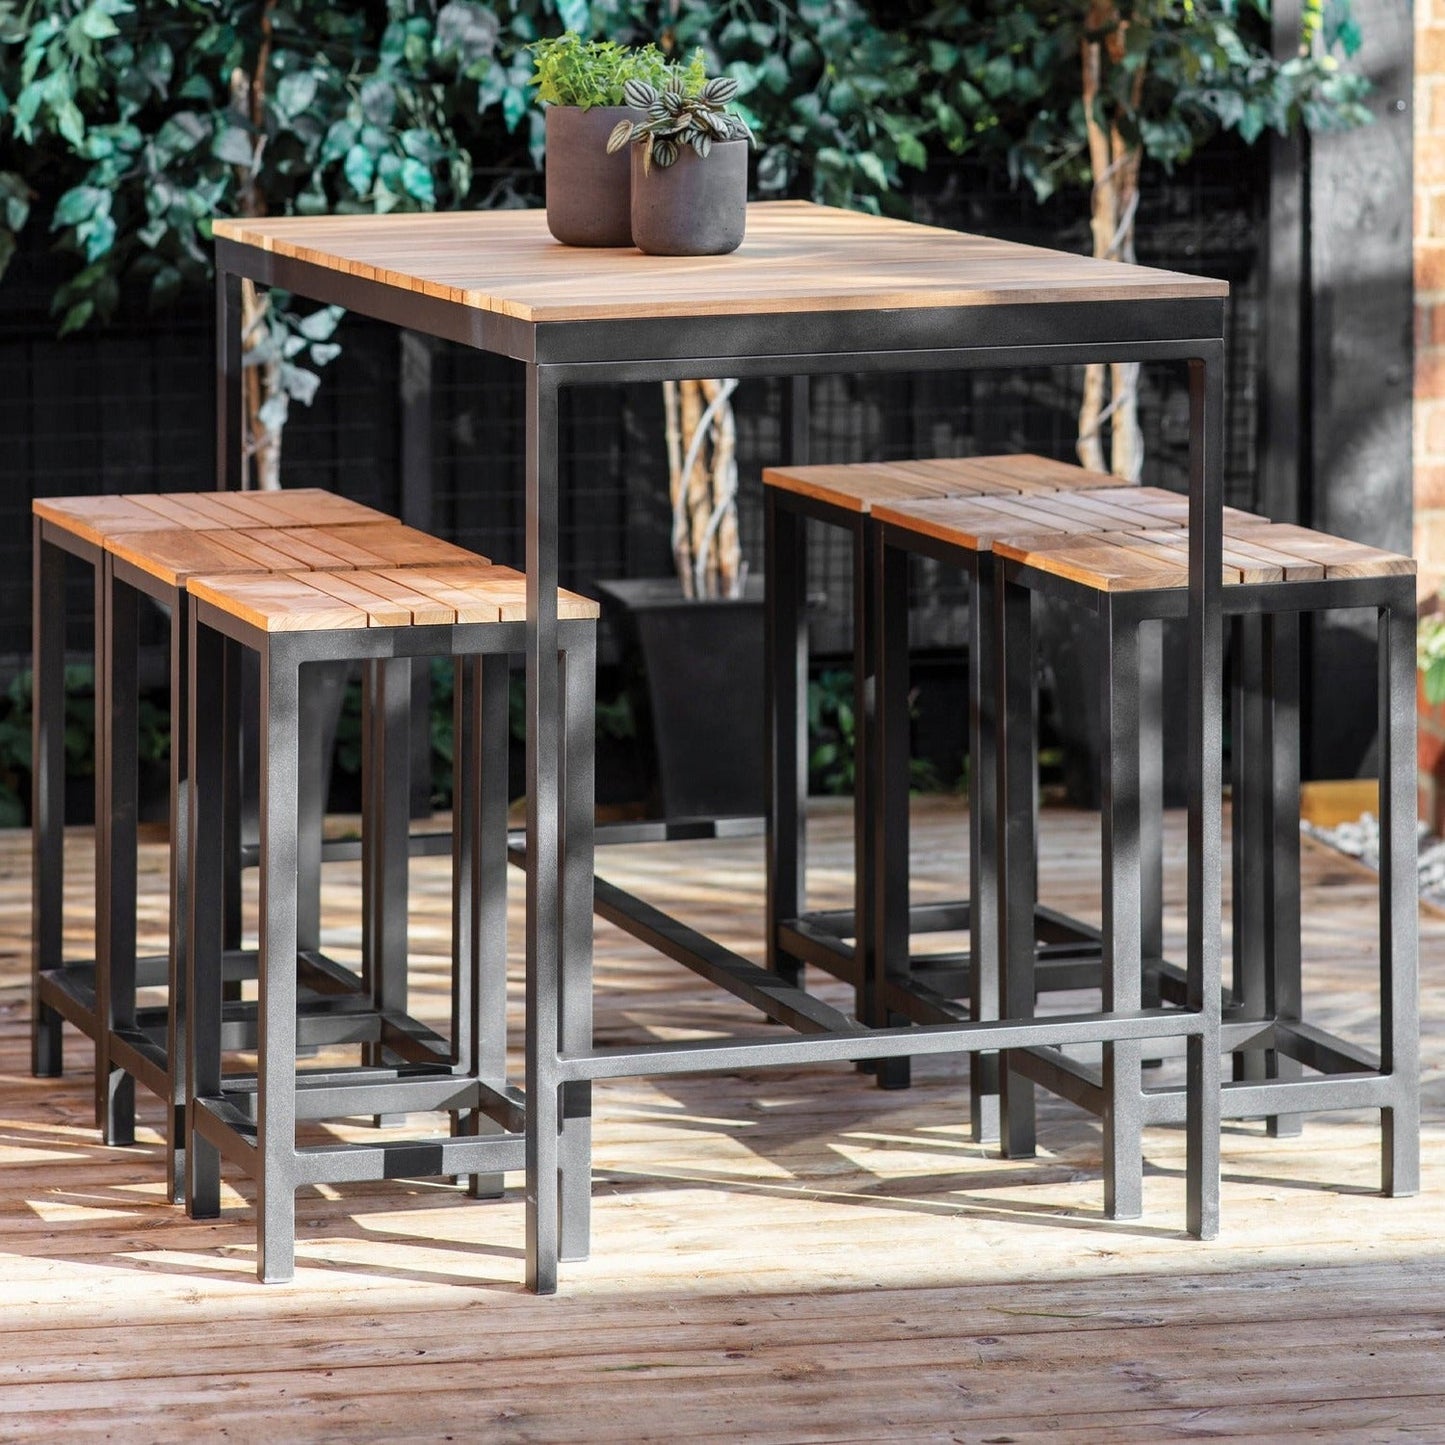 Camley Outdoor Bar Table Set Teak by Garden Trading